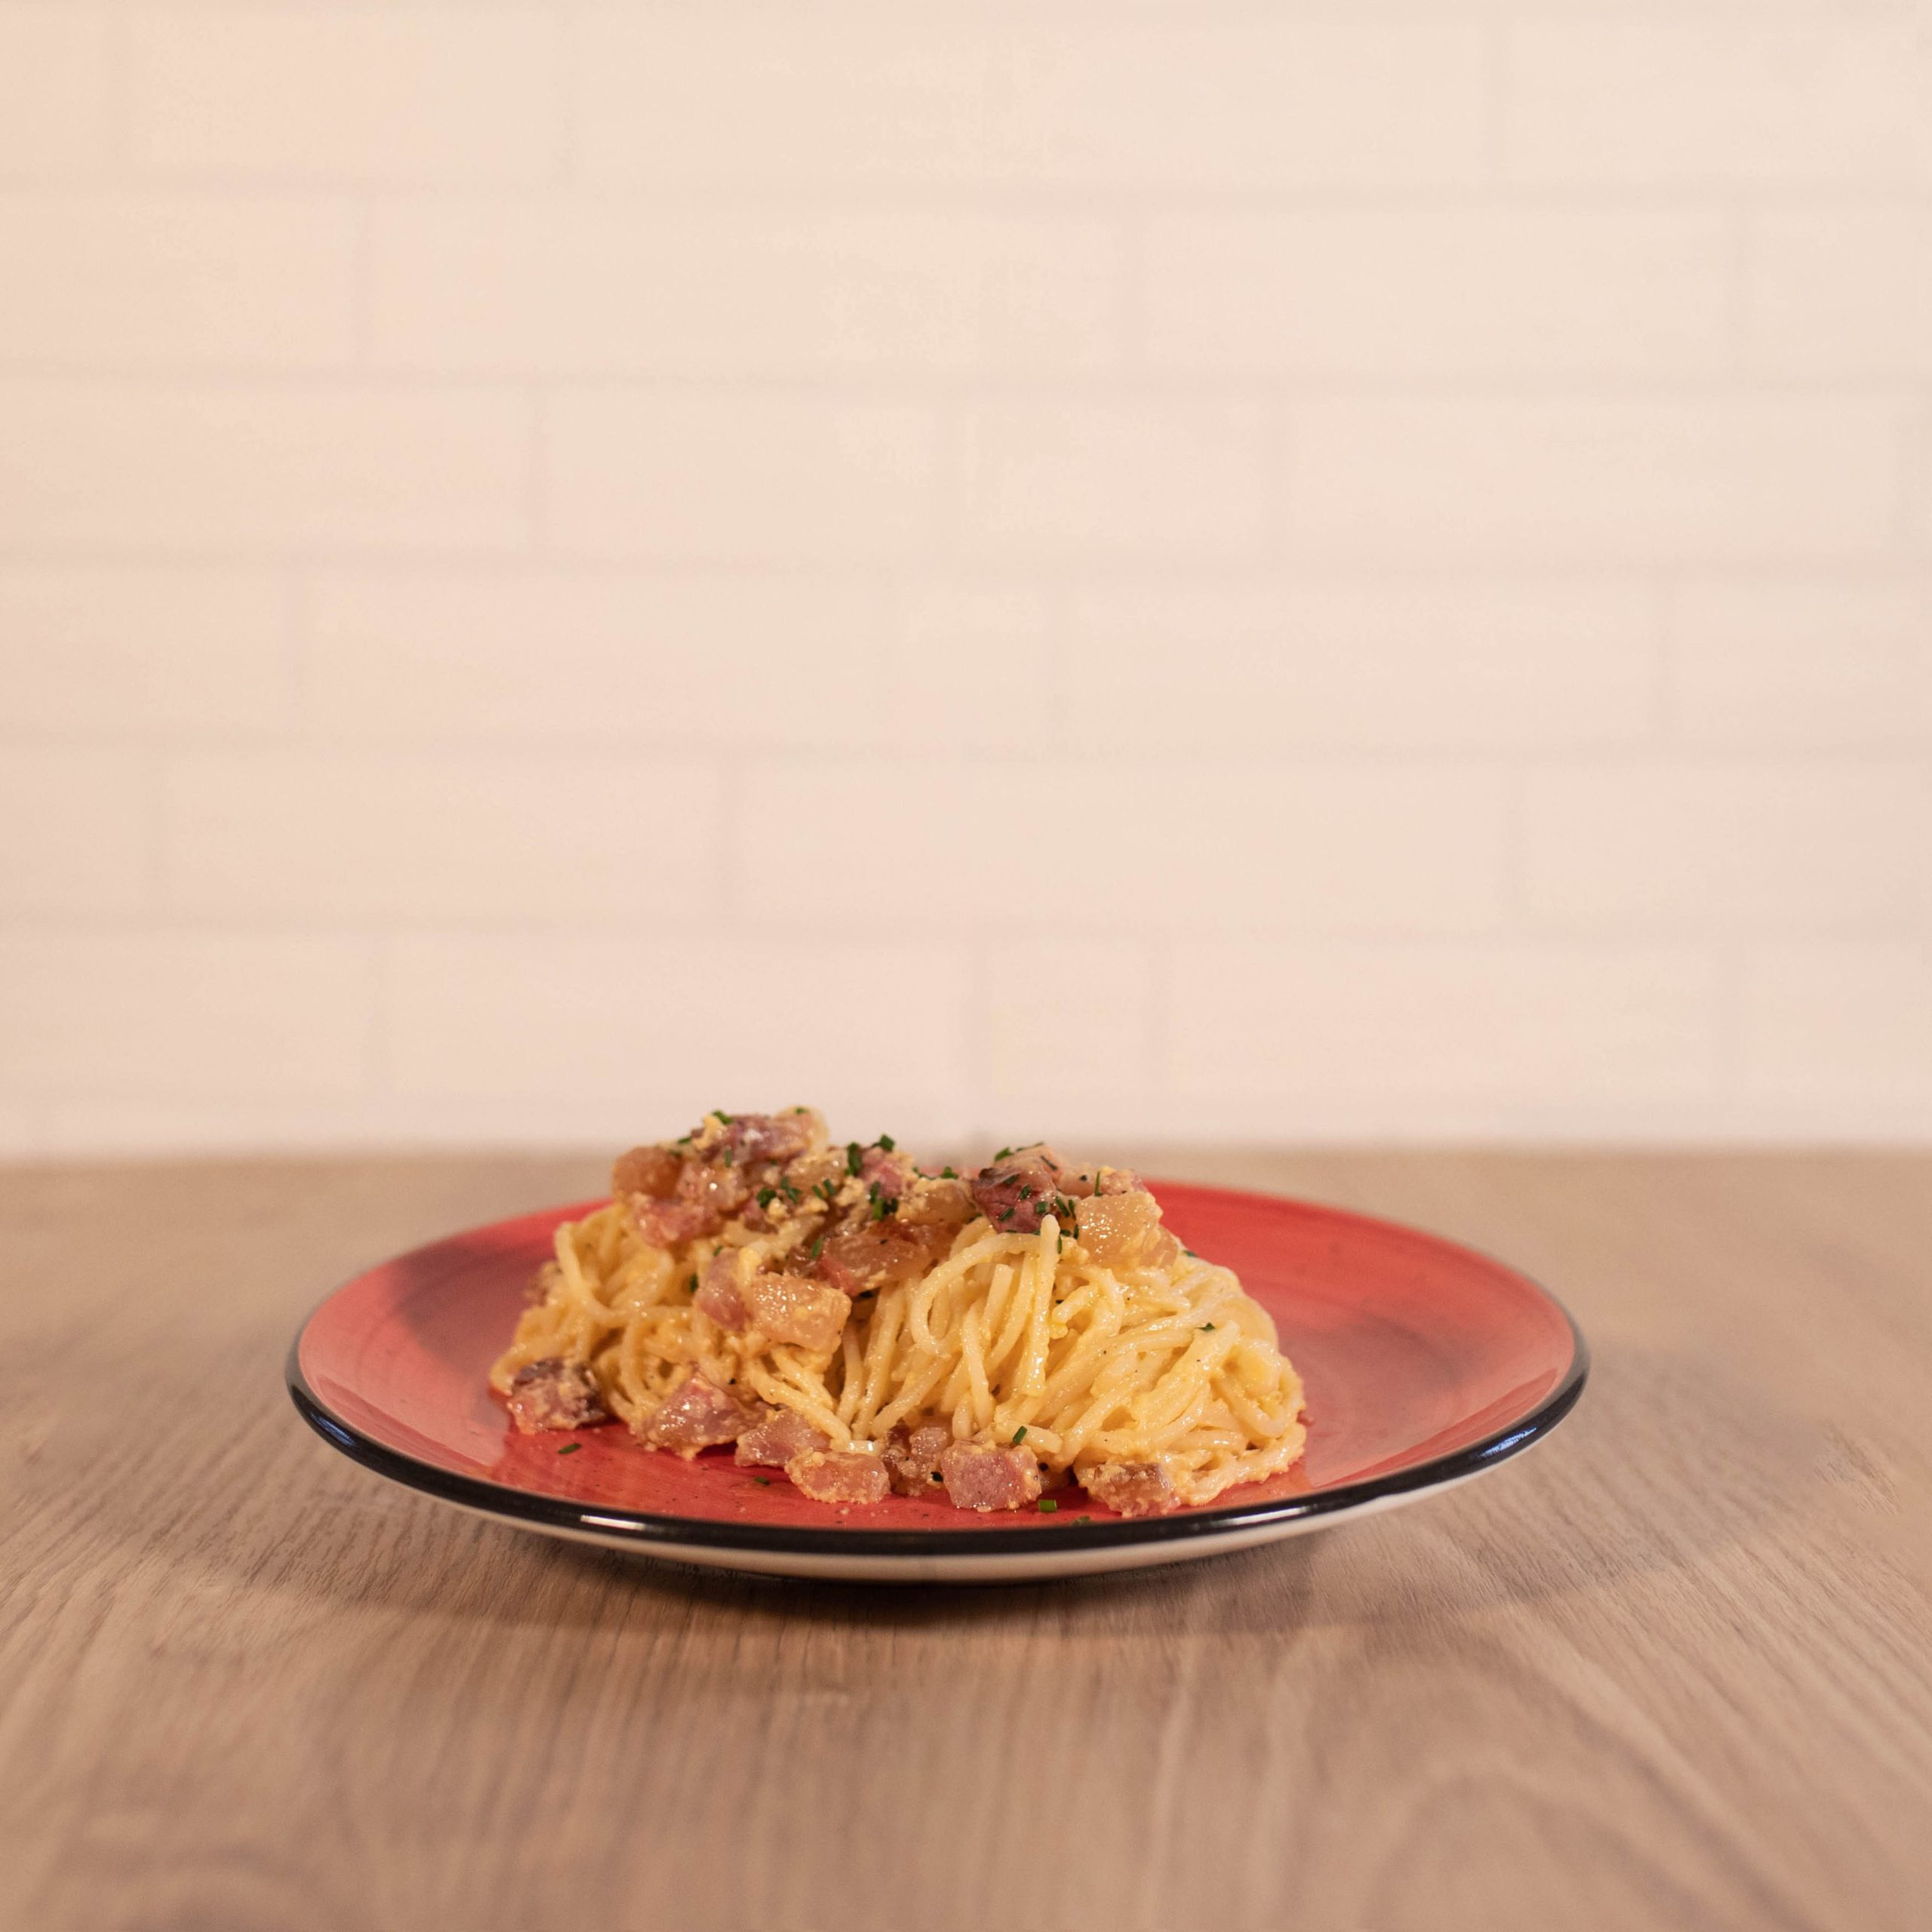 Spaguetti a la auténtica carbonara con guanchiale, yema de huevo y parmesano.